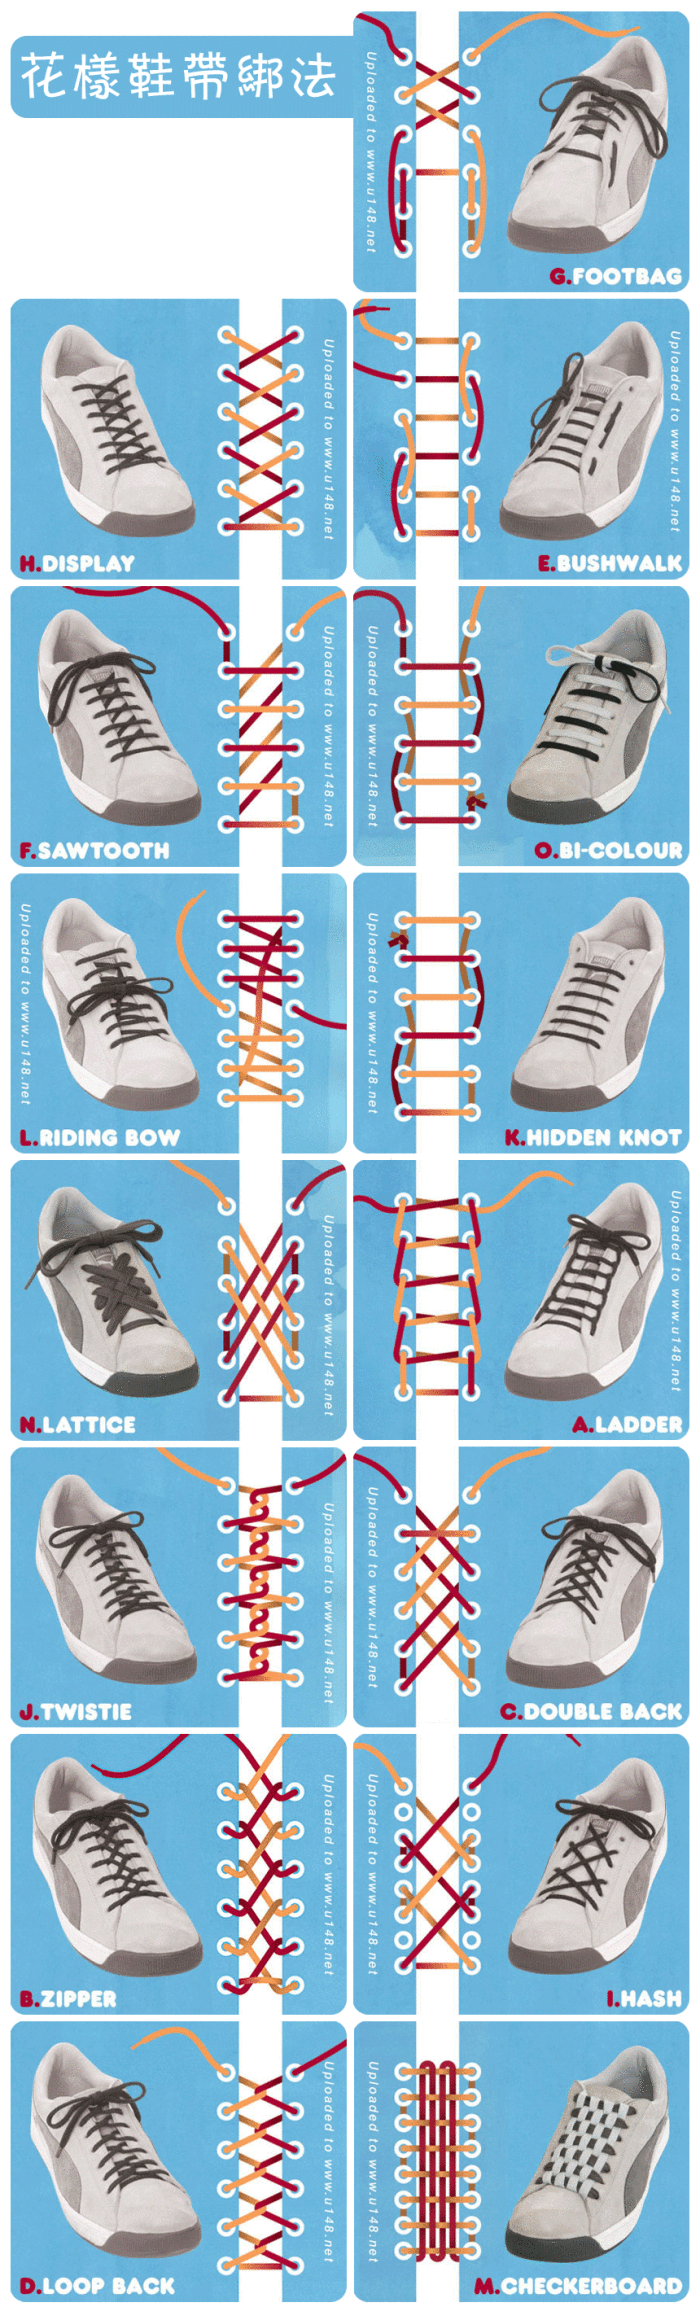 图表设计-花样鞋带绑法15种